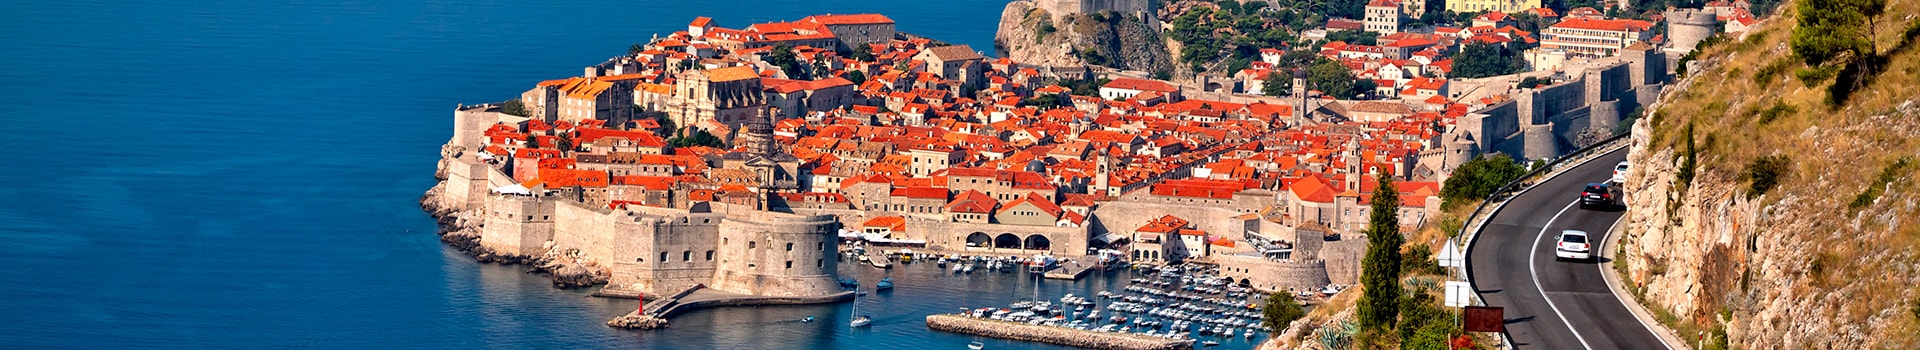 Bergerac - Dubrovnik